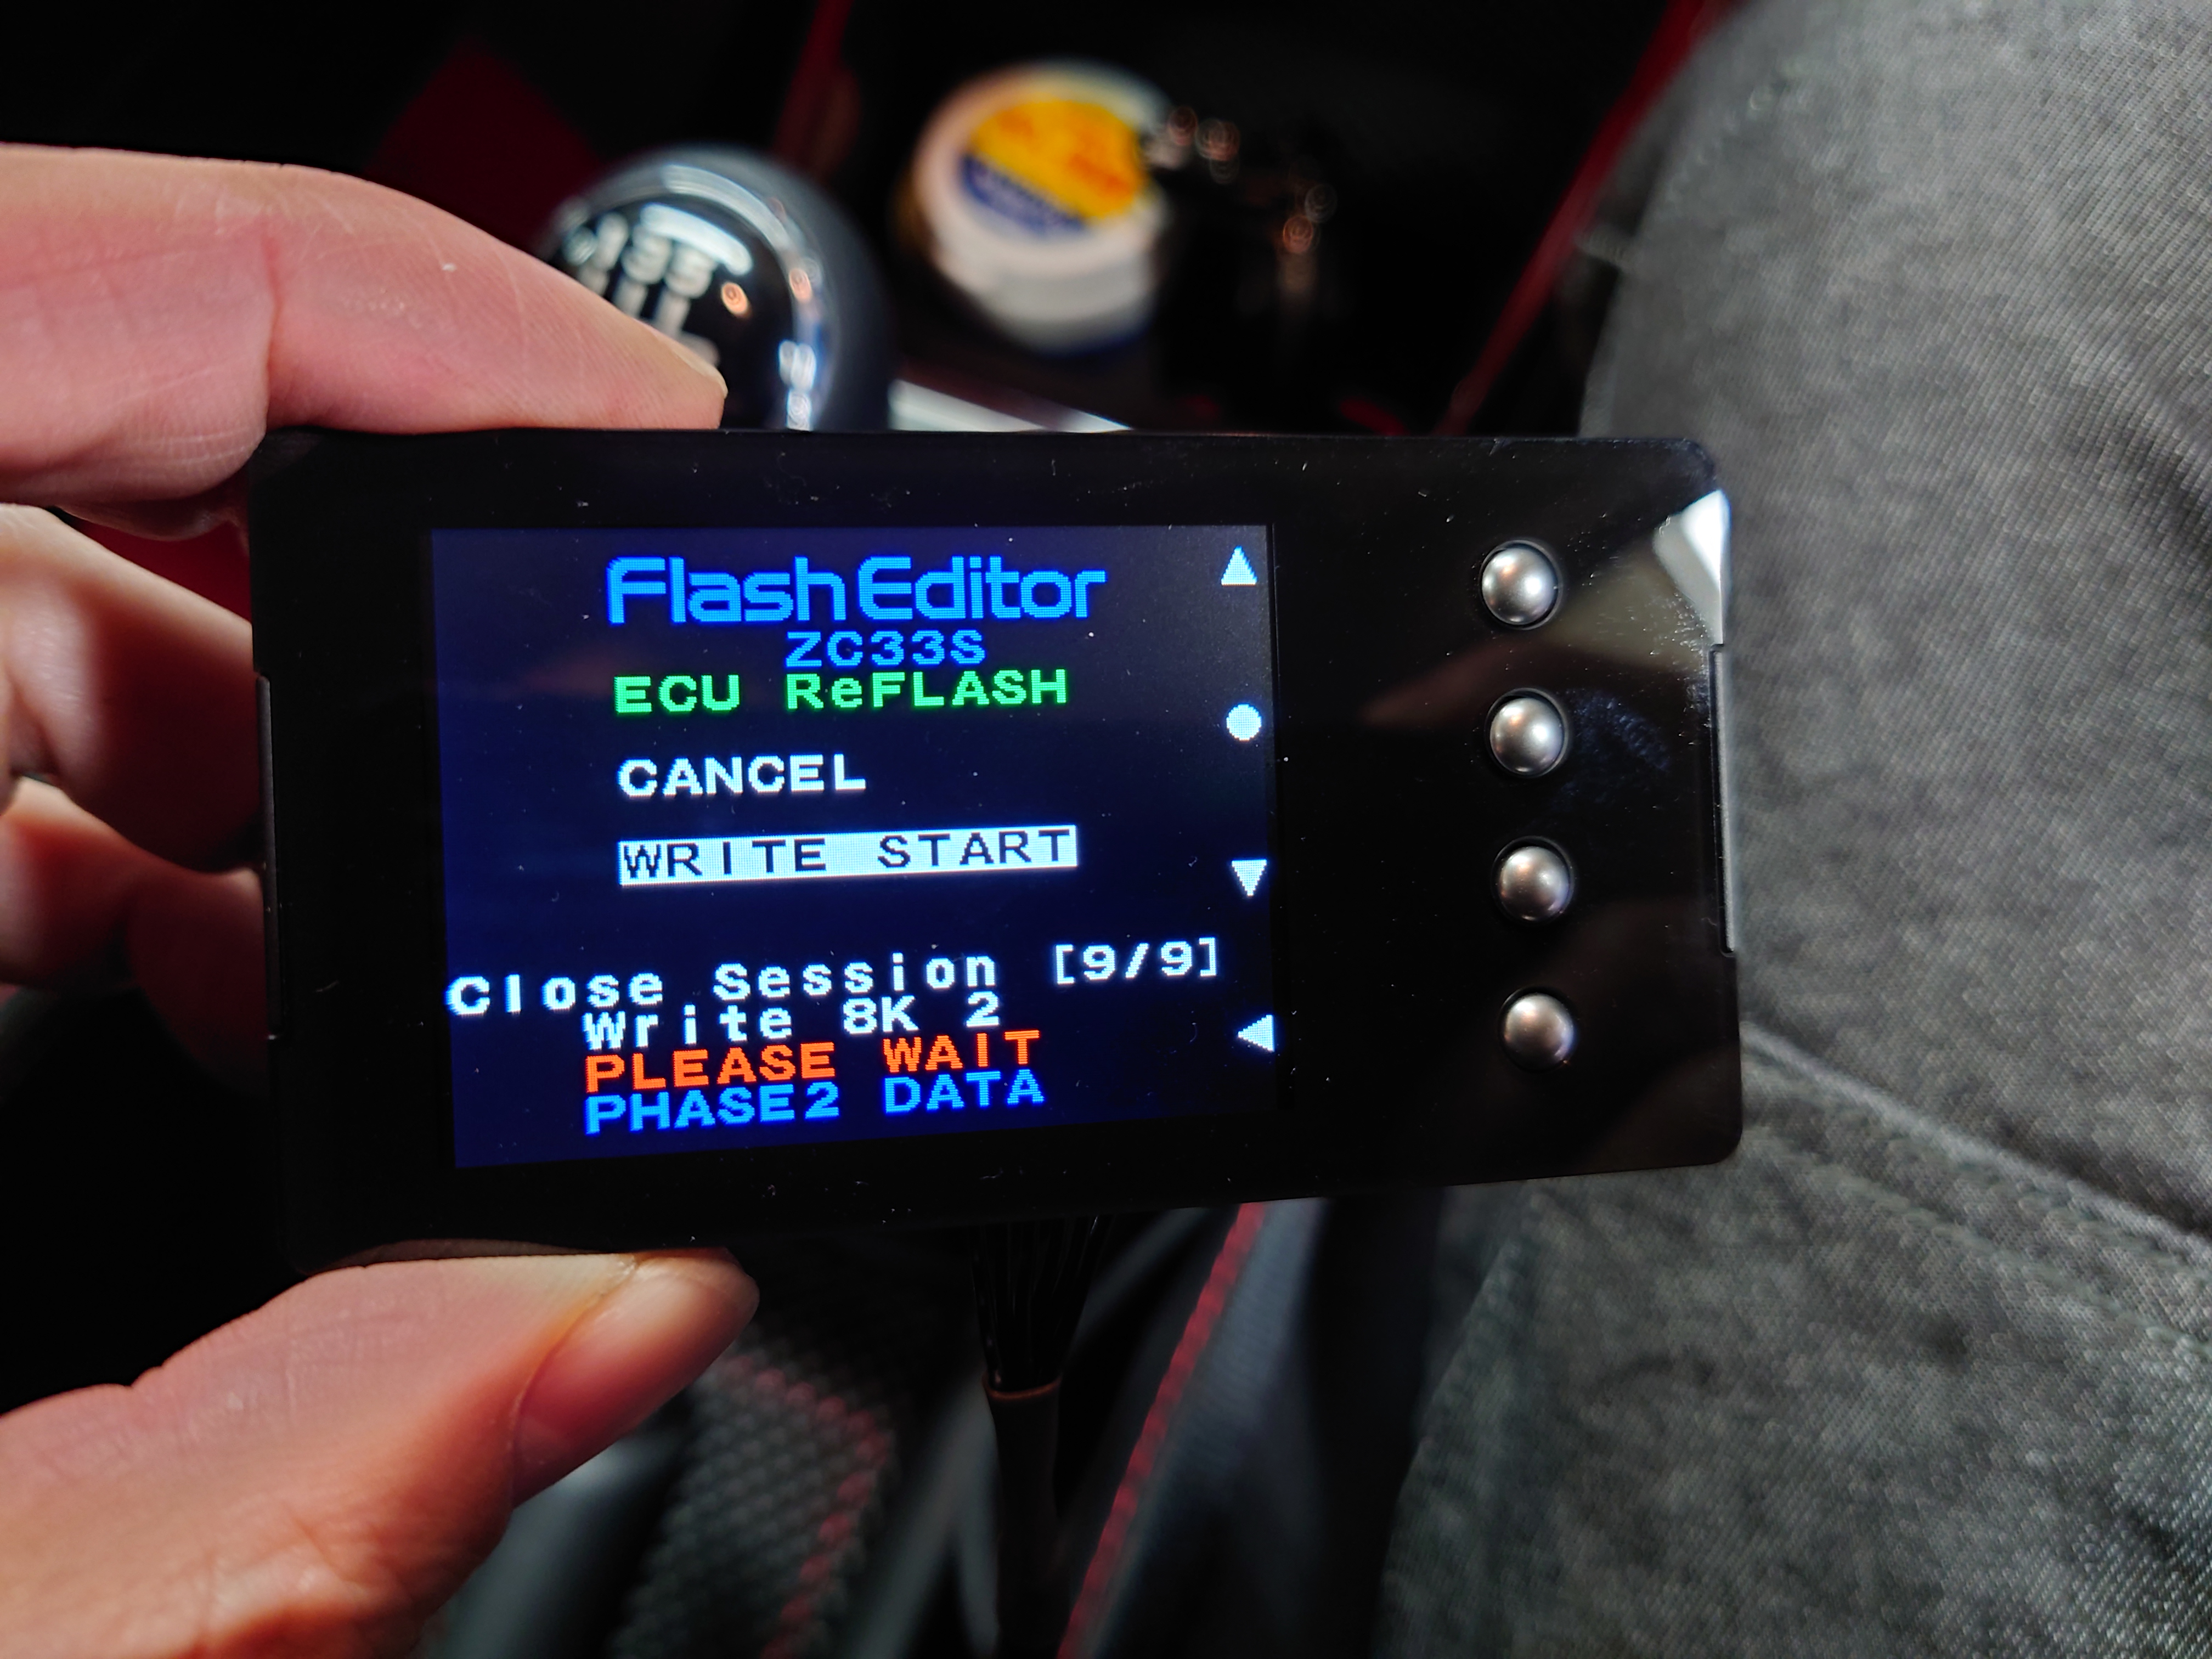 HKS Flash Editor フラッシュエディター（GVB）